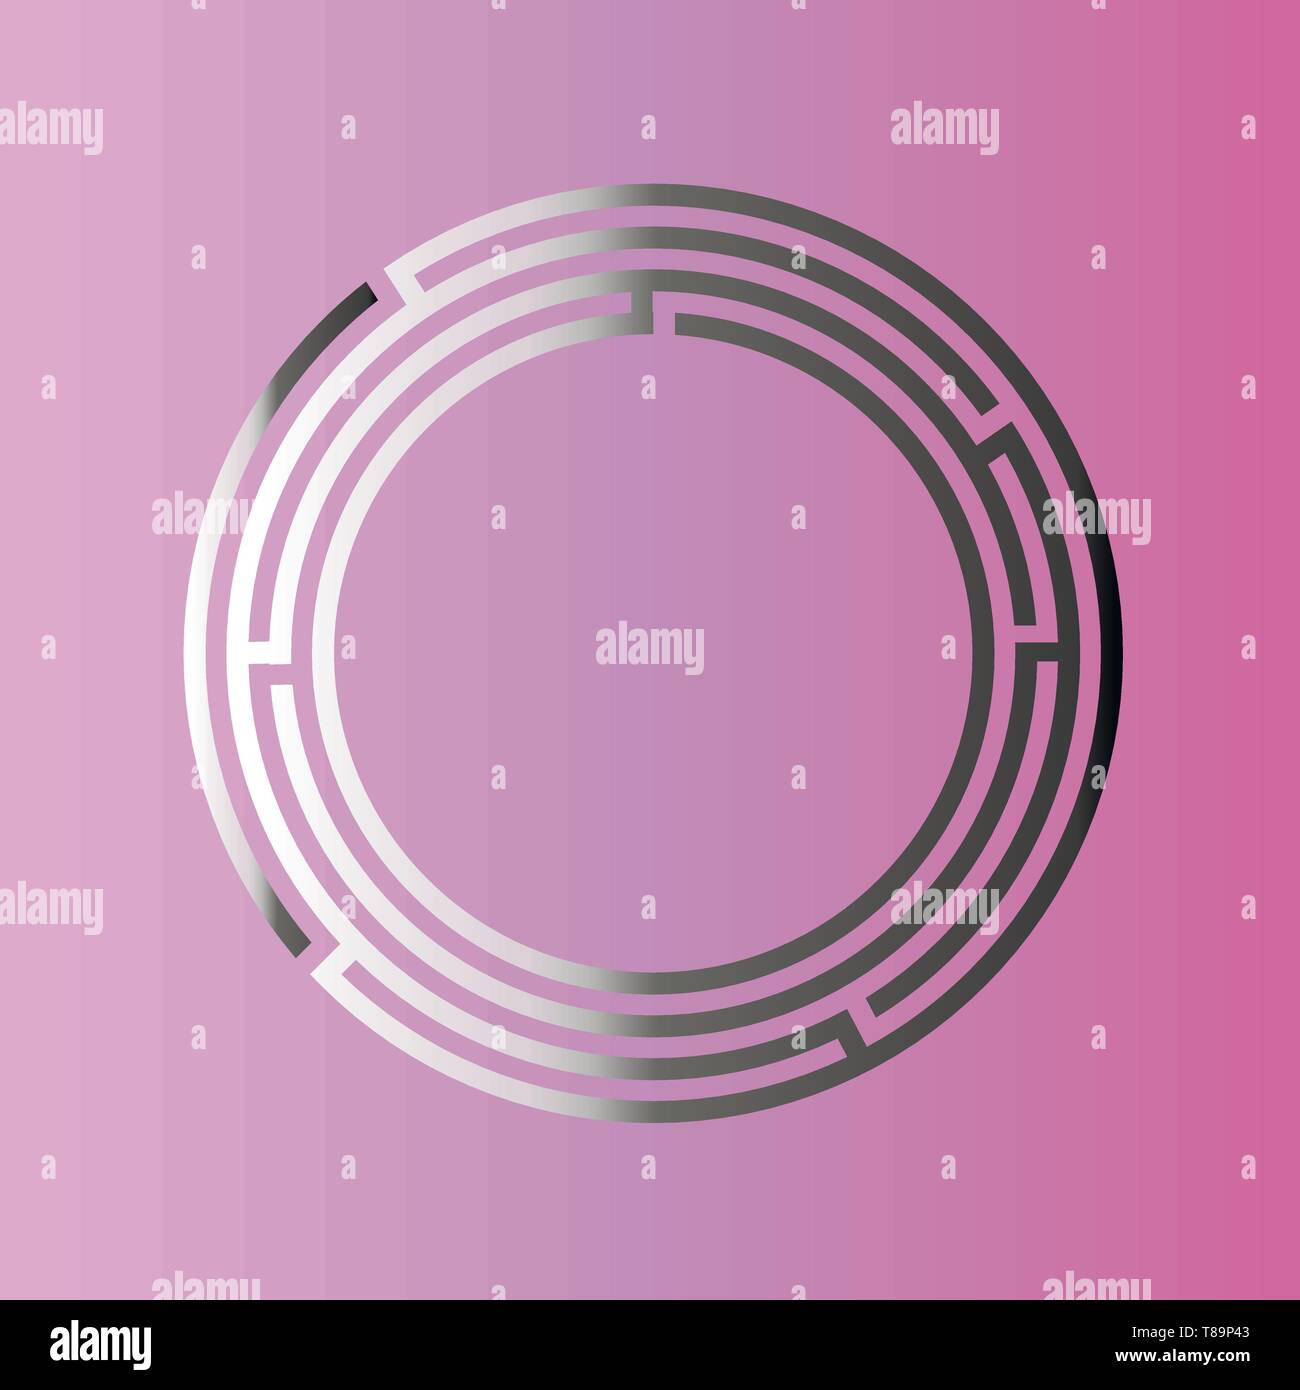 Jeu de labyrinthe labyrinthe ronde illustration vecteur EPS10 isolé sur fond rose Illustration de Vecteur